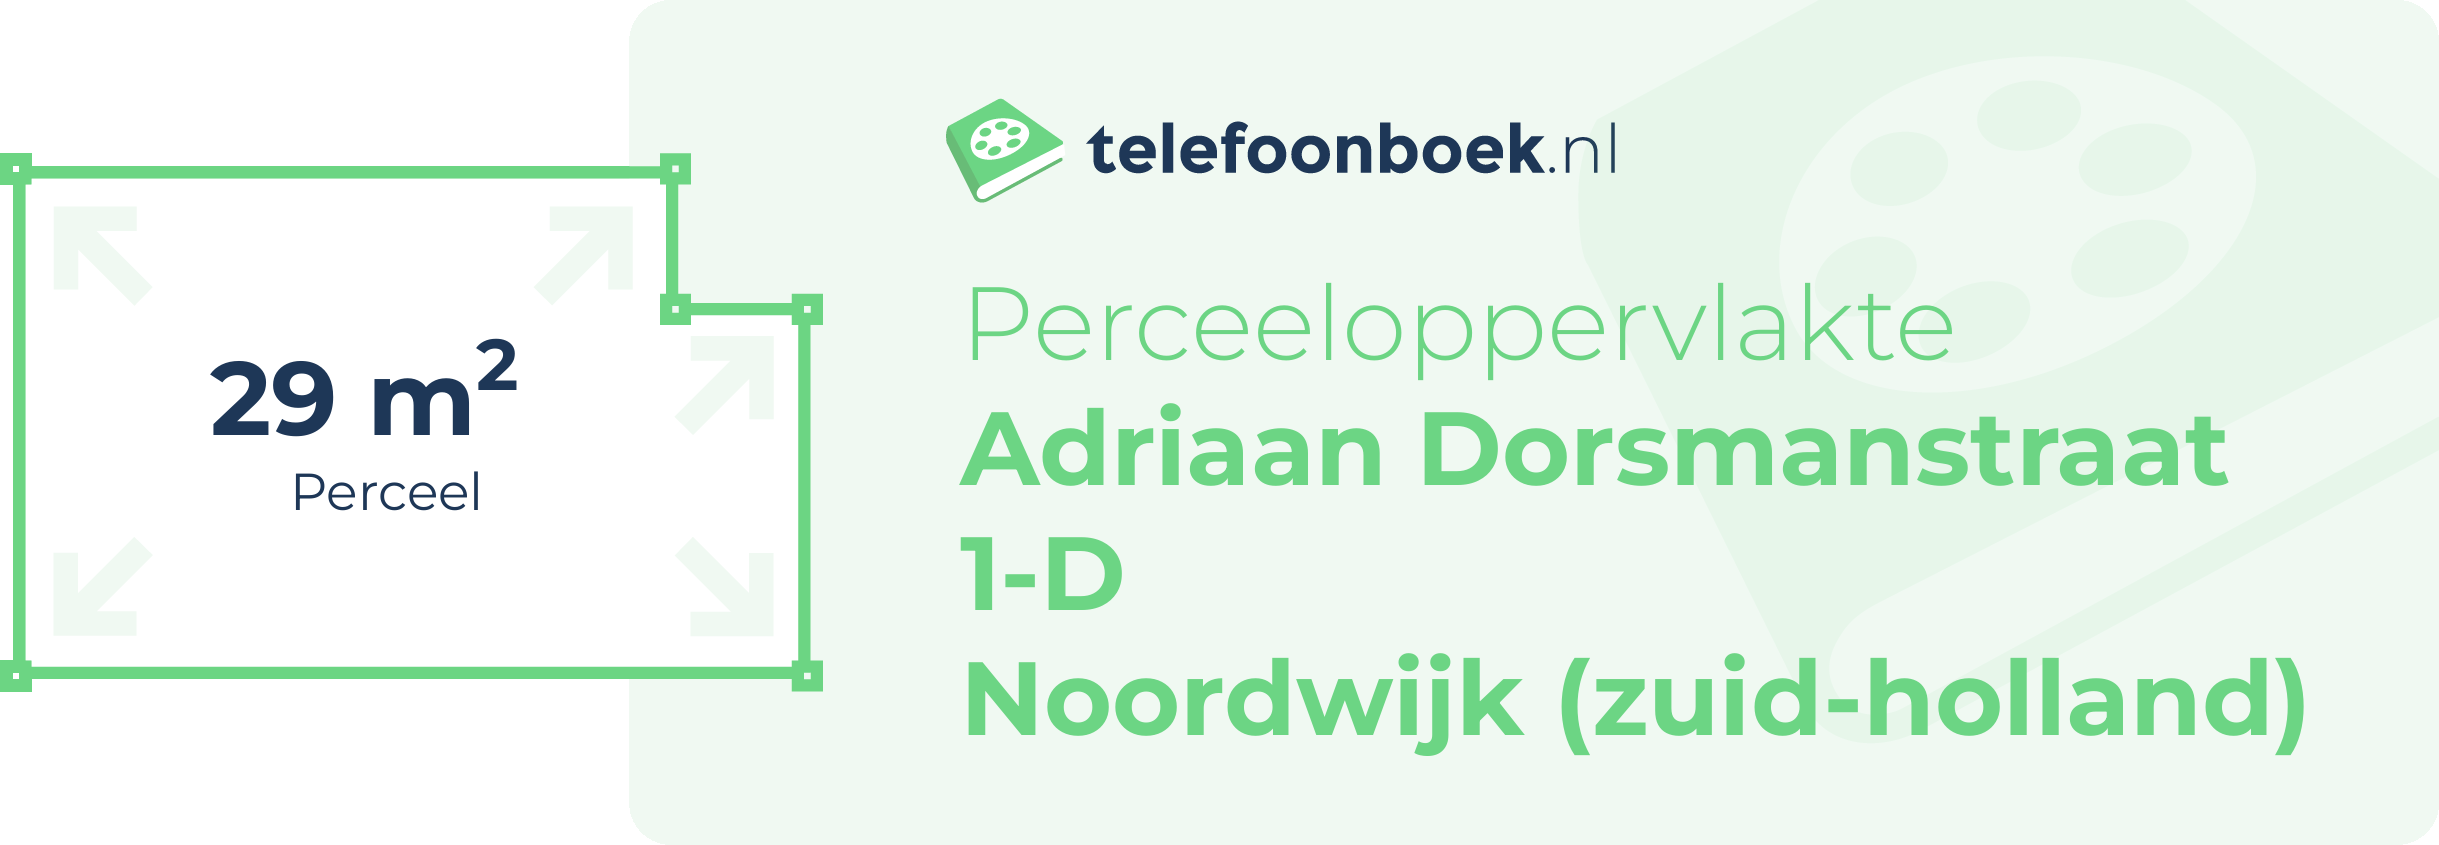 Perceeloppervlakte Adriaan Dorsmanstraat 1-D Noordwijk (Zuid-Holland)